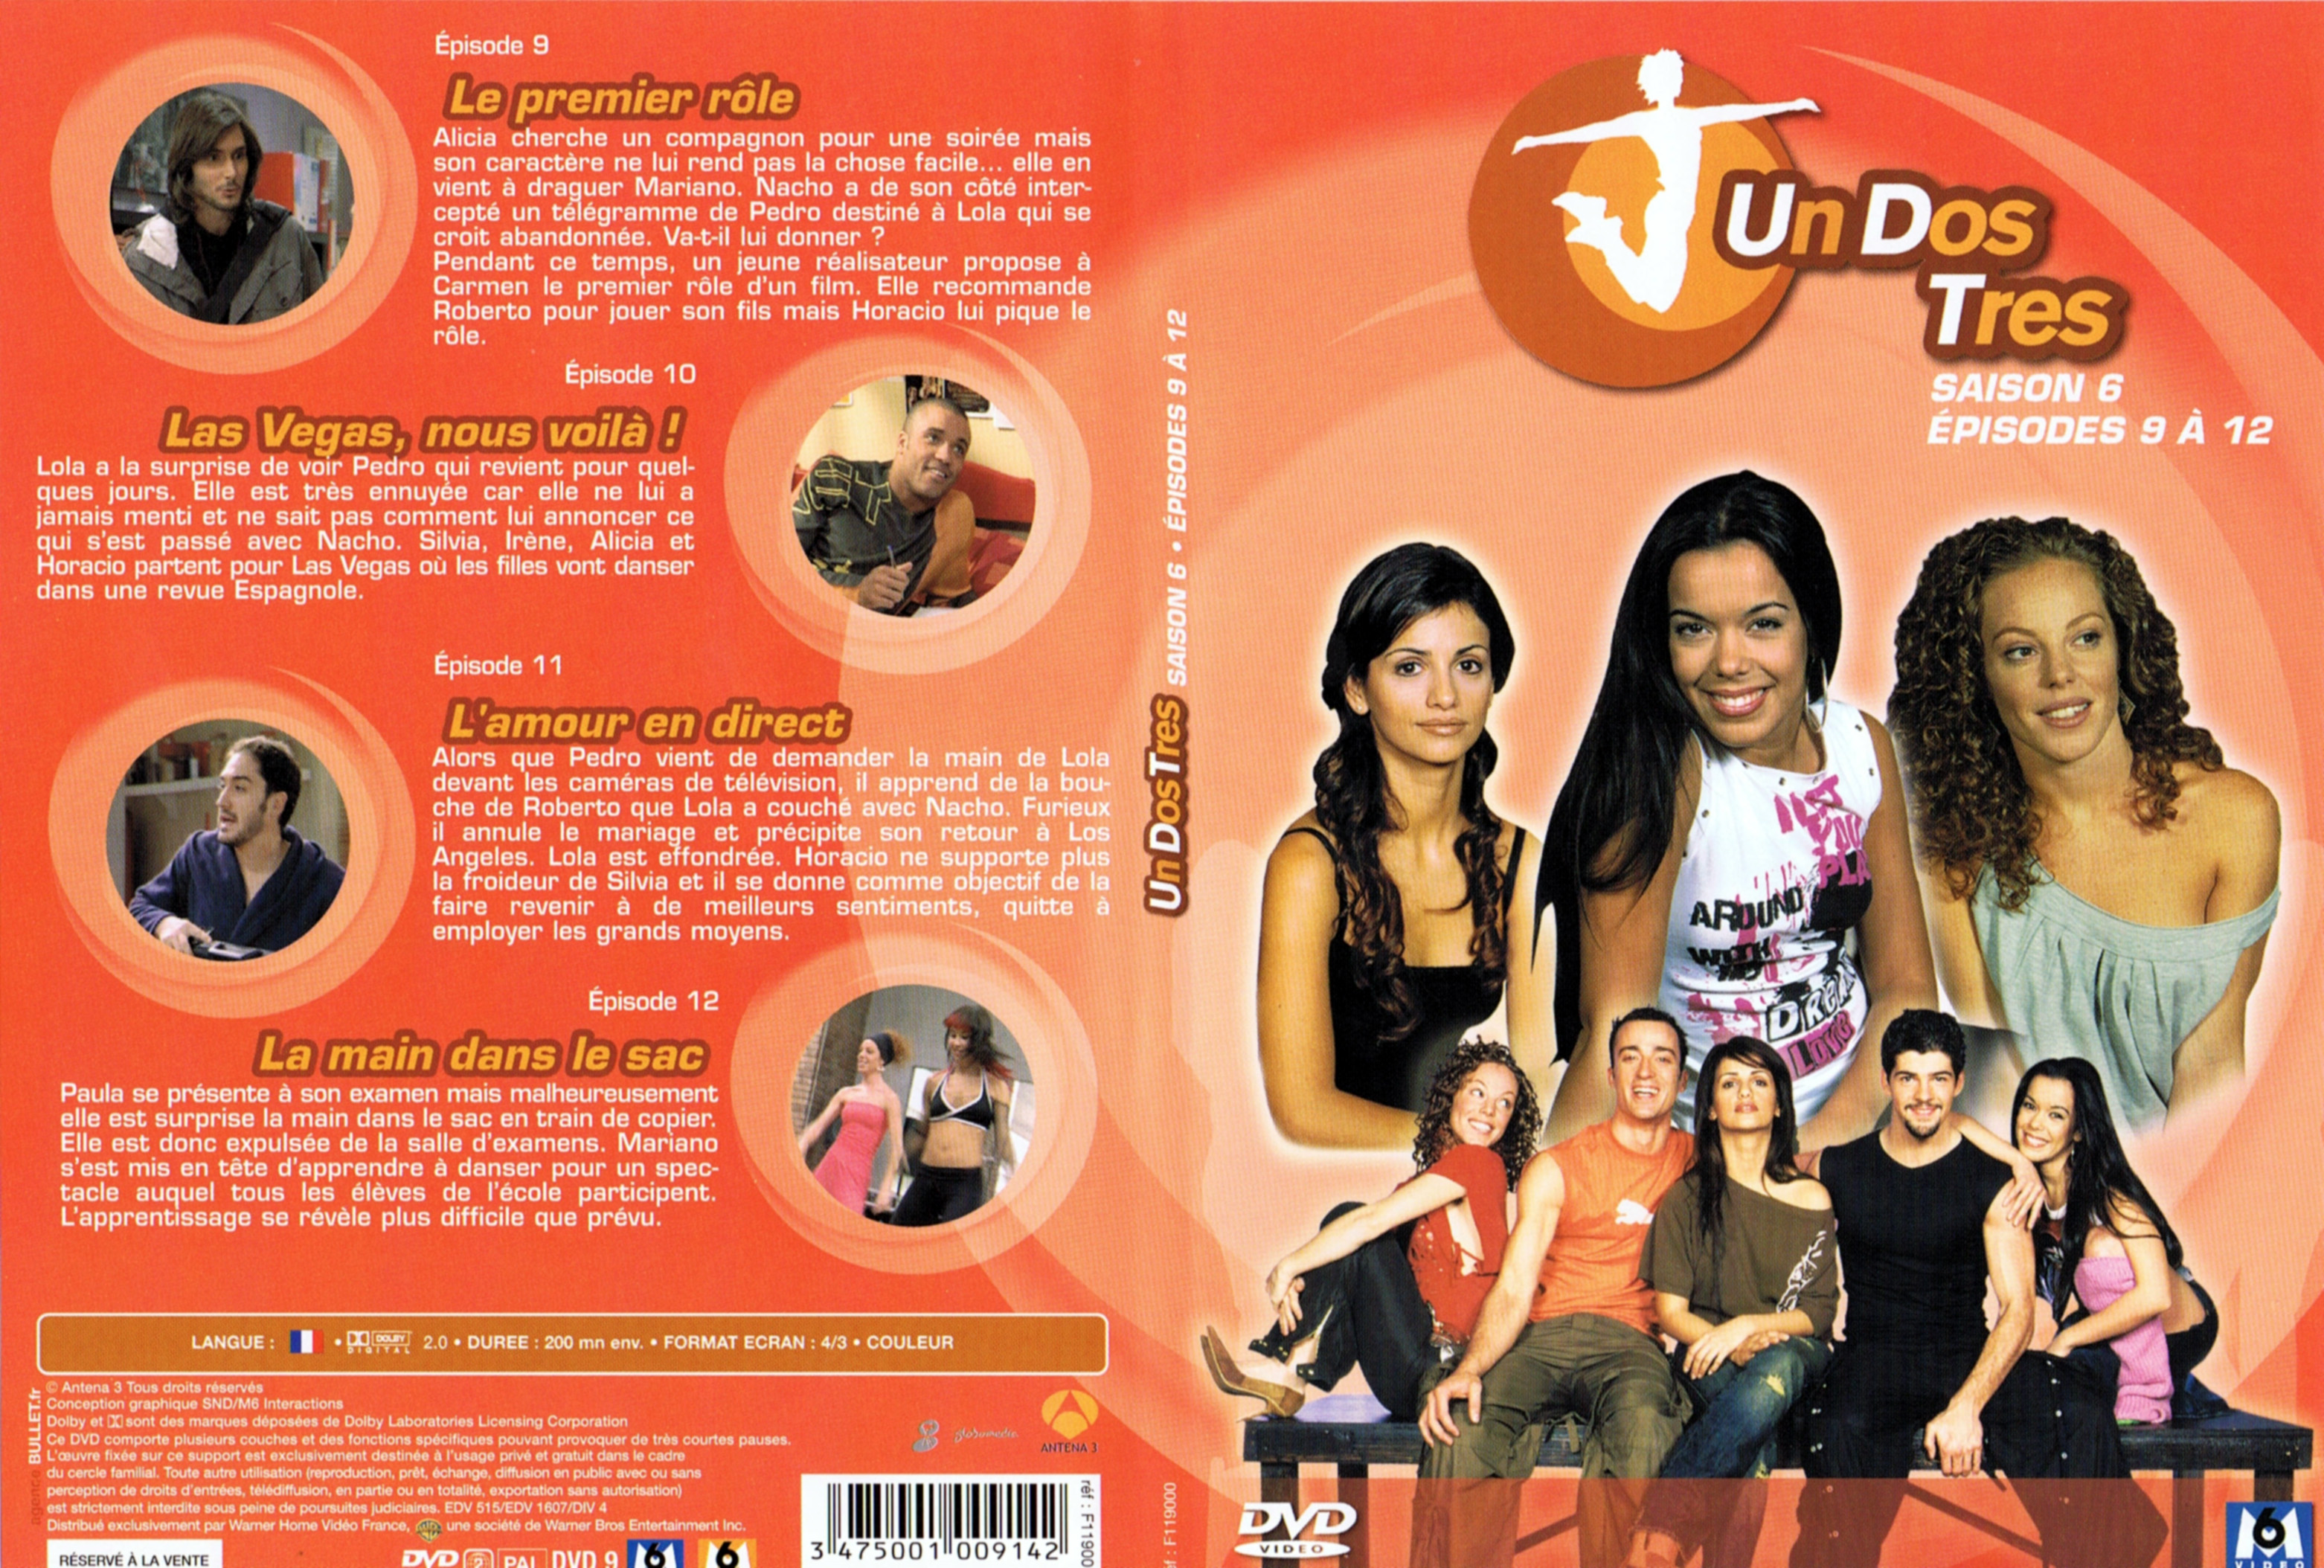 Jaquette DVD Un dos tres Saison 6 DVD 3